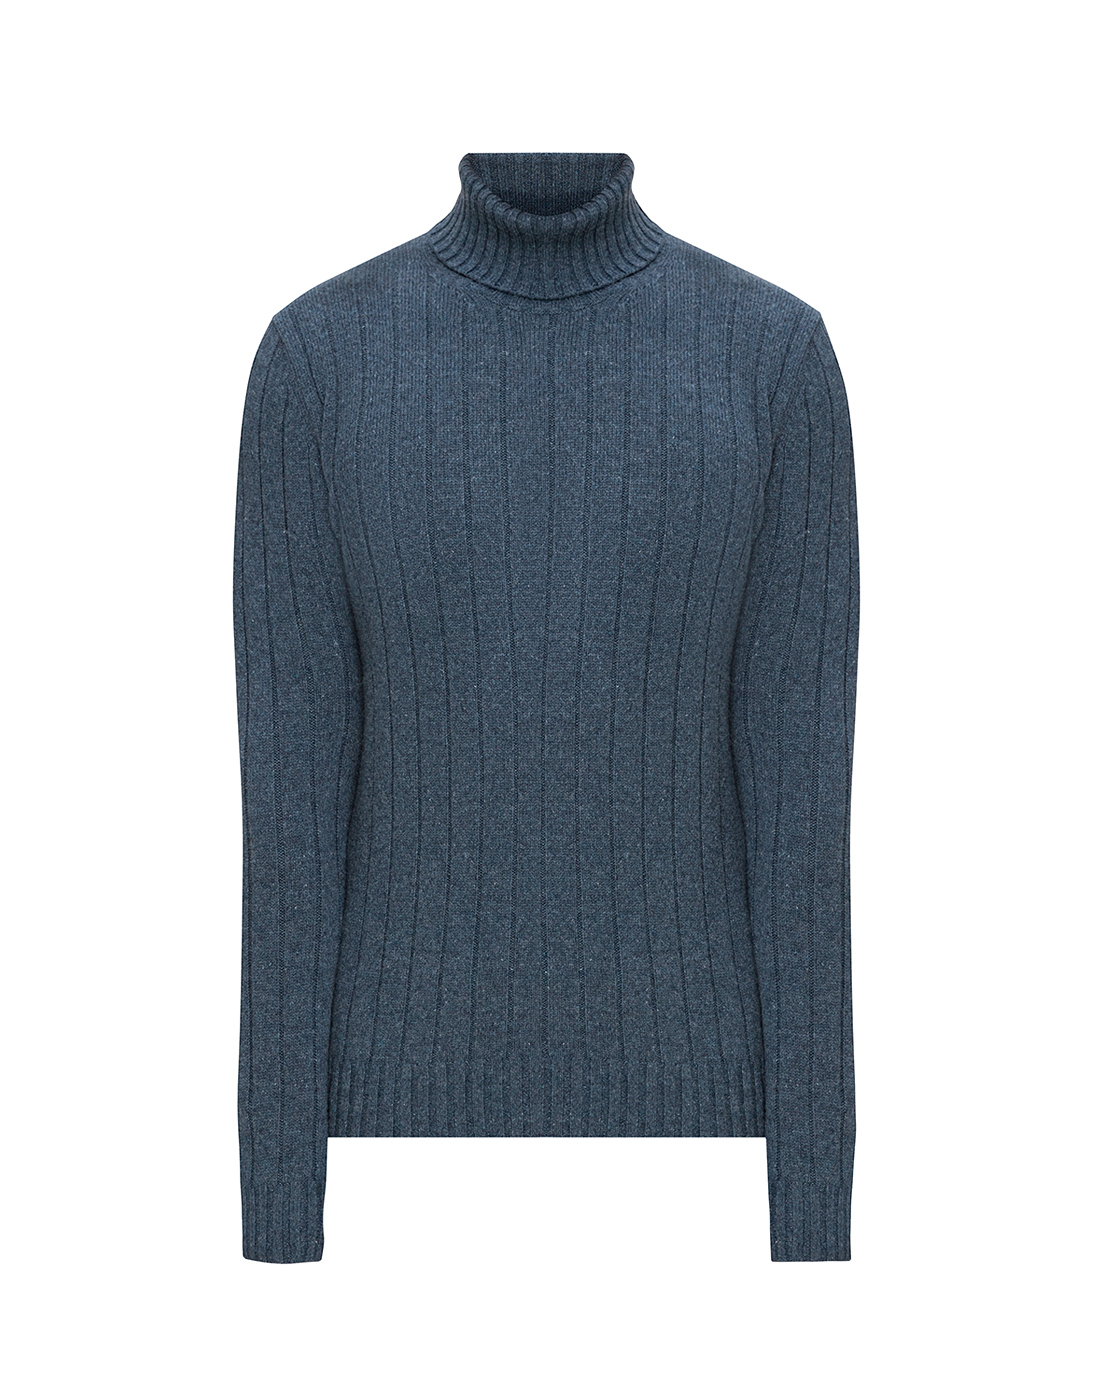 Мужской светло-синий кашемировый свитер Lardini SILLMML136 IL53029 830-1